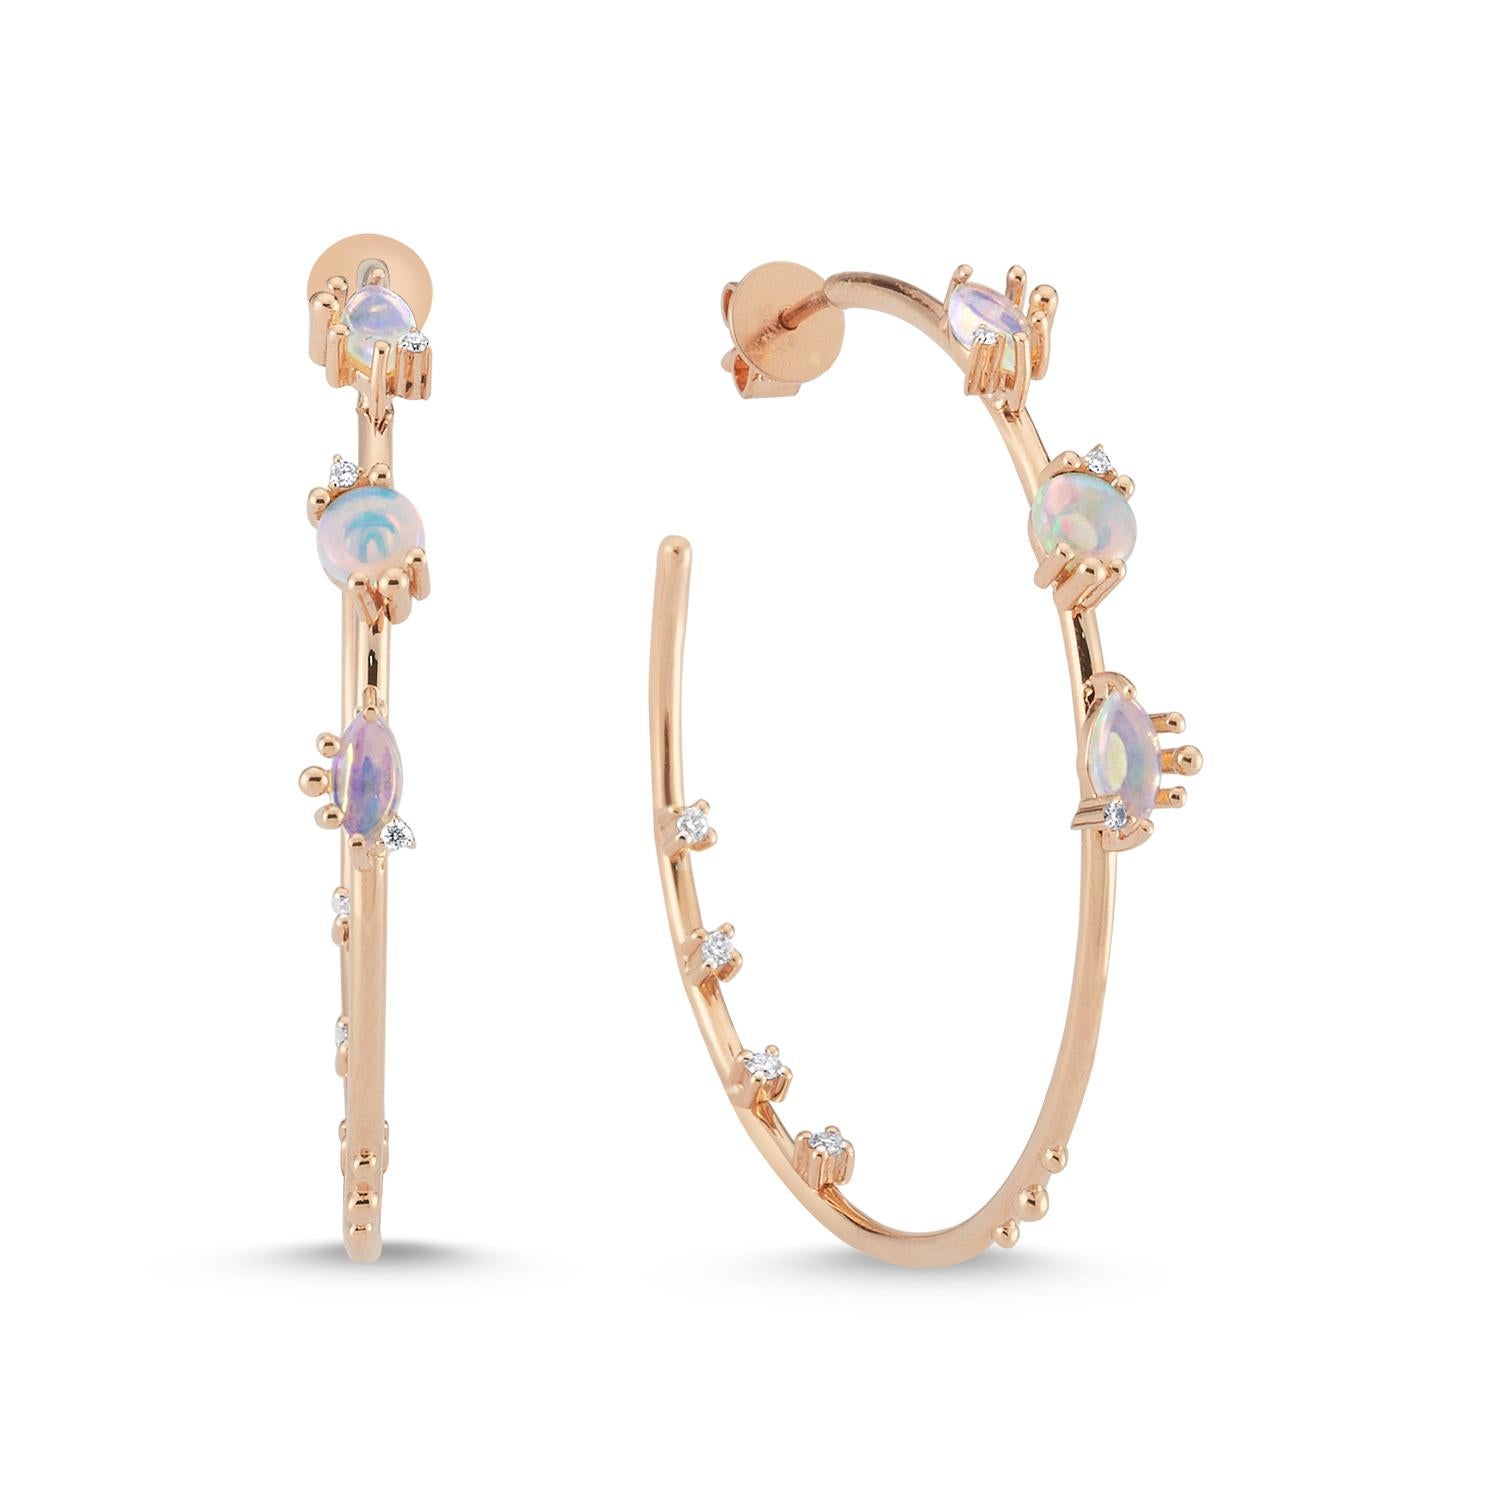 Cacia Hoop 14K Rose Gold Ohrringe mit Opal von Selda Jewellery

Zusätzliche Informationen:
Collection'S: Treasures Of The Sea Collection'S
14K Rose Gold
0.16Ct Weißer Diamant
0.41Ct Weißer Opal